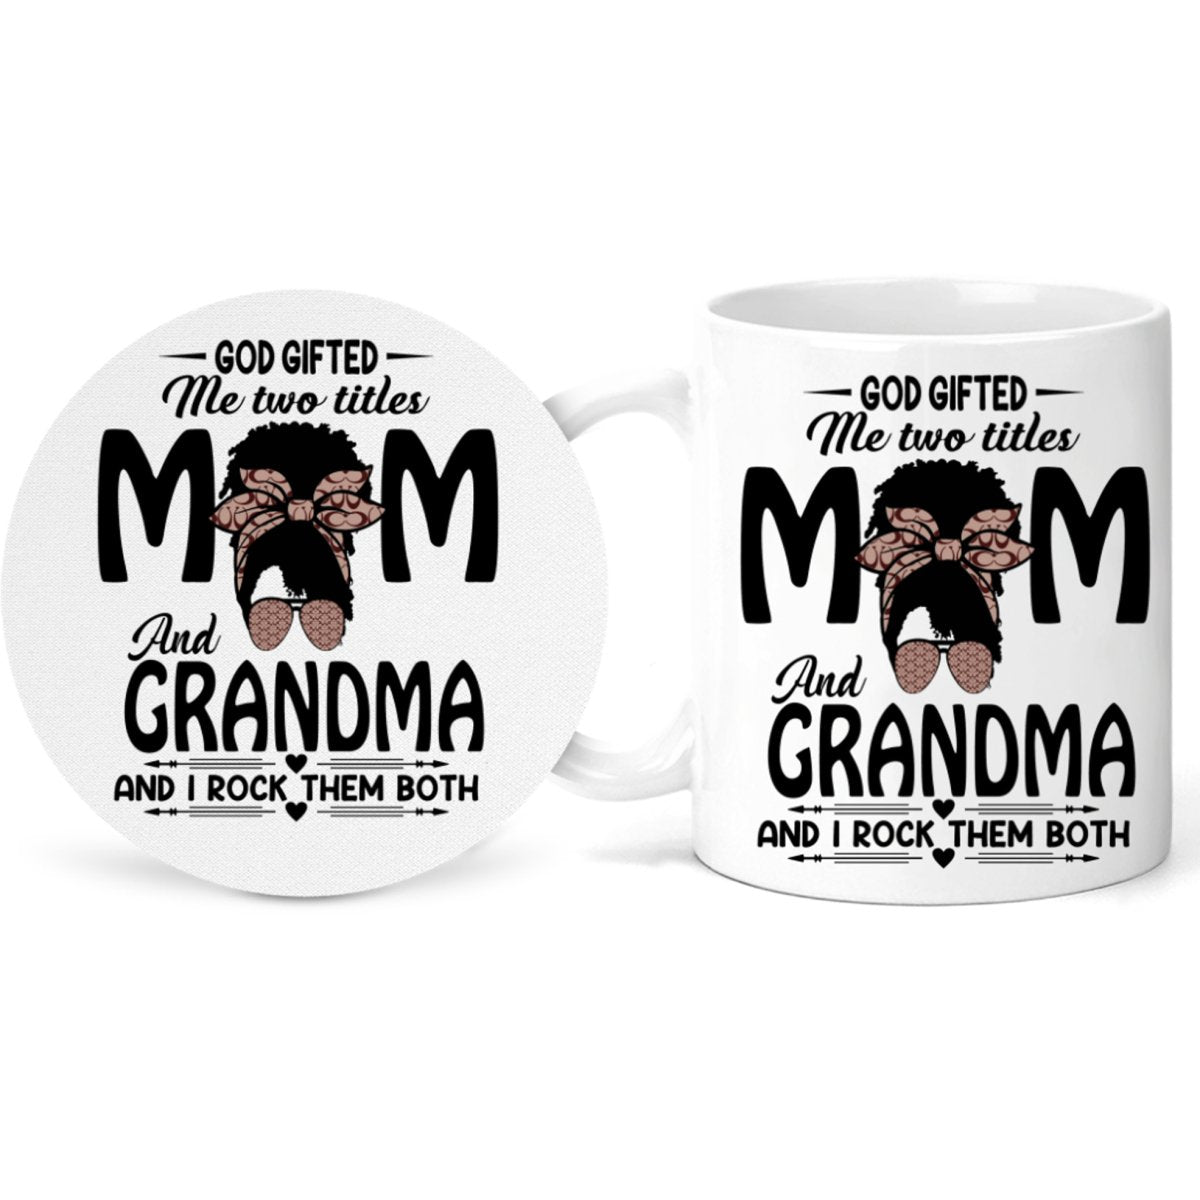 Mom and Grandma Mug and Coaster Set - Sweet Sentimental GiftsMom and Grandma Mug and Coaster SetMugsPeach SimbaSweet Sentimental GiftsMGM-MC-WHI-11Mom and Grandma Mug and Coaster Set955454660402